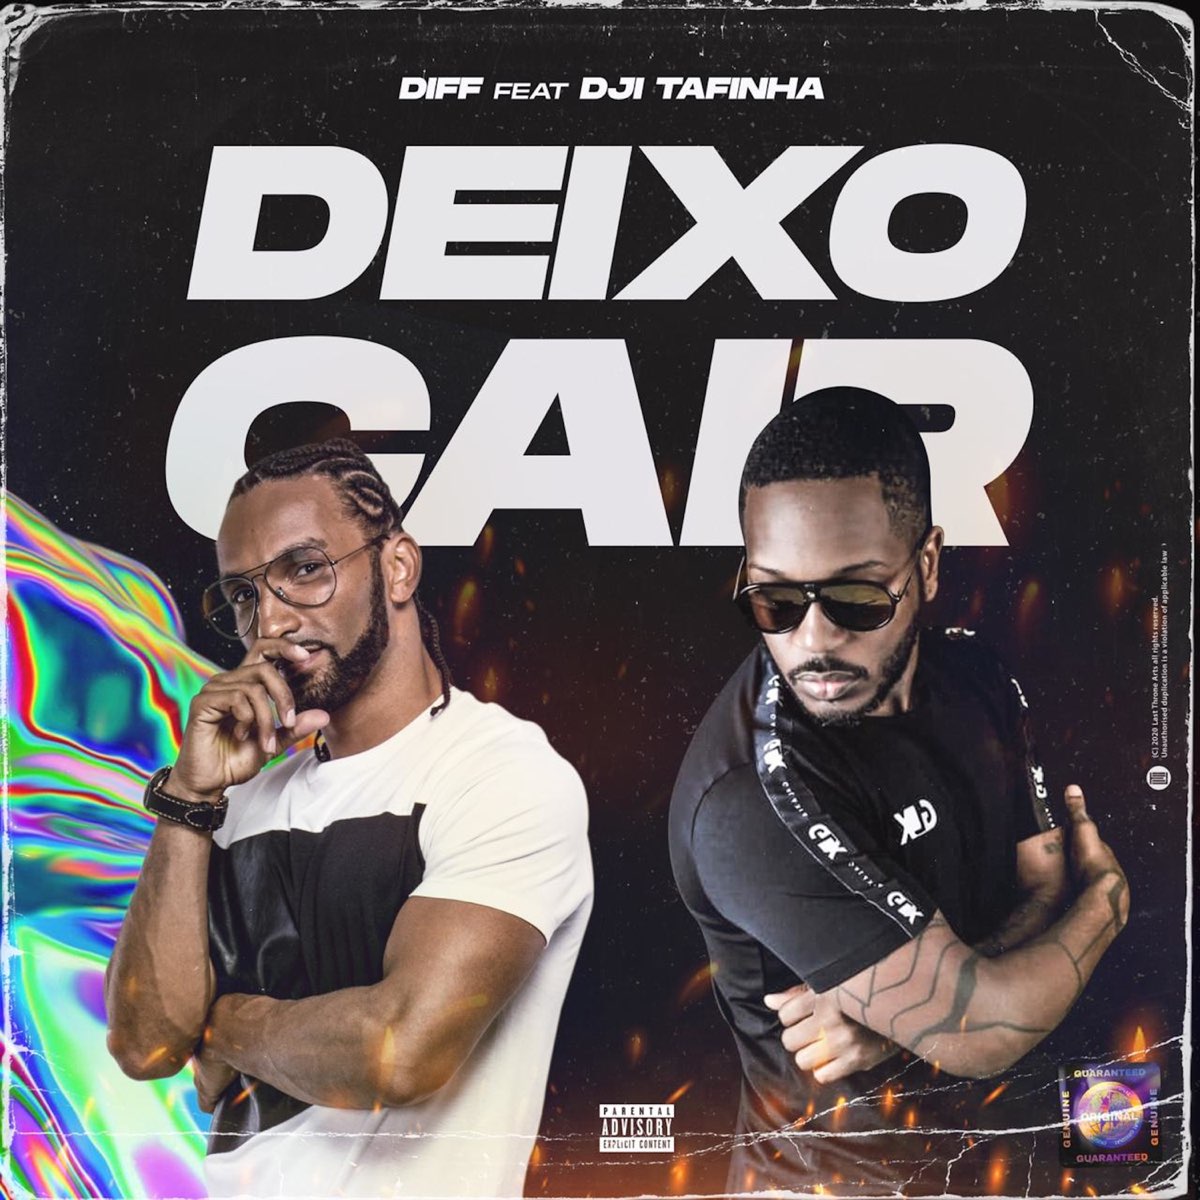 Deixo Cair Feat Dji Tafinha Single By Diff On Apple Music